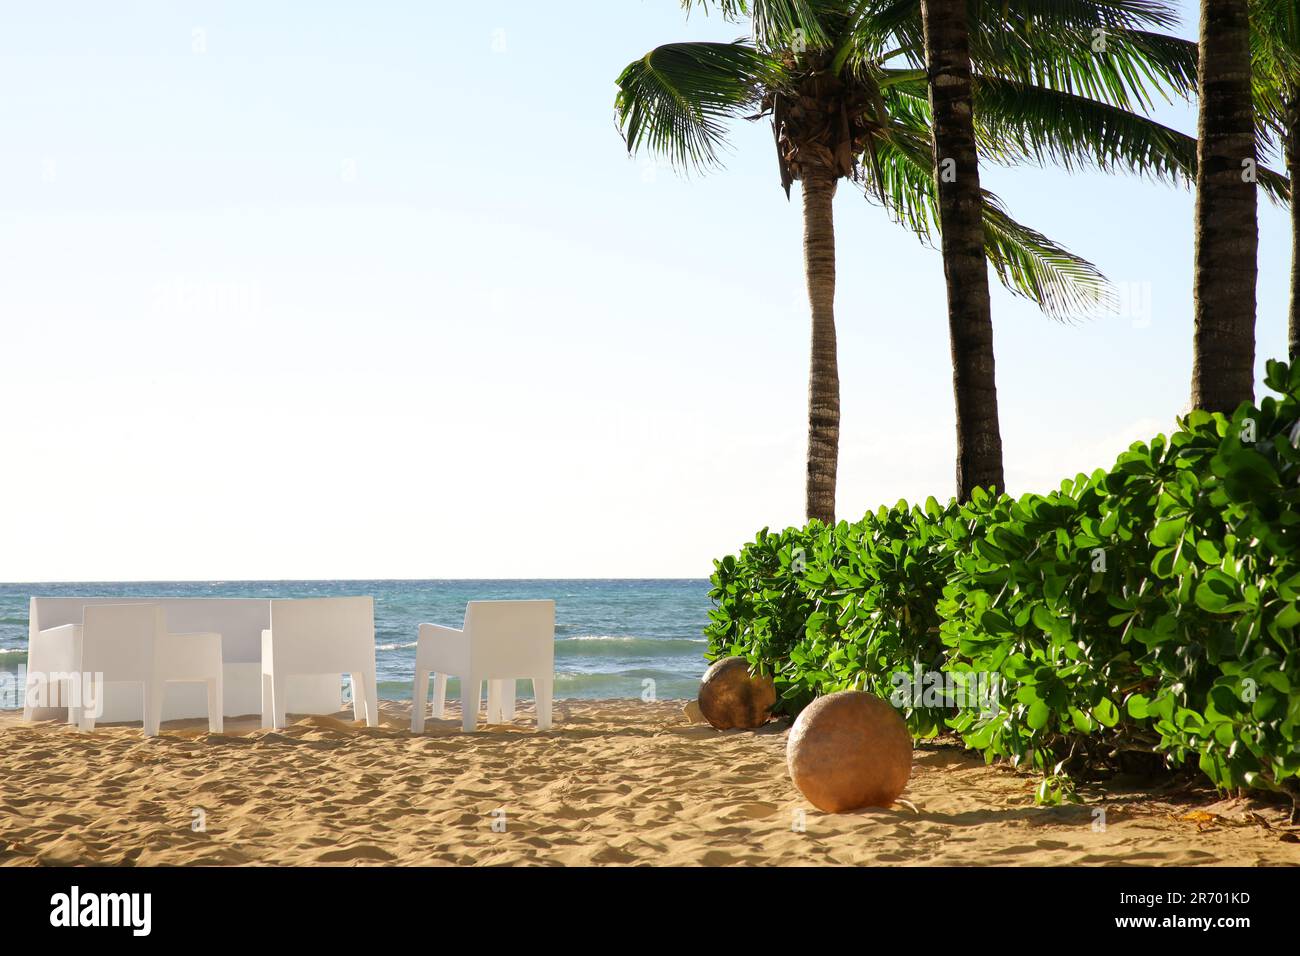 Vista pintoresca de la playa de arena, muebles y palmeras cerca del mar en el día soleado Foto de stock